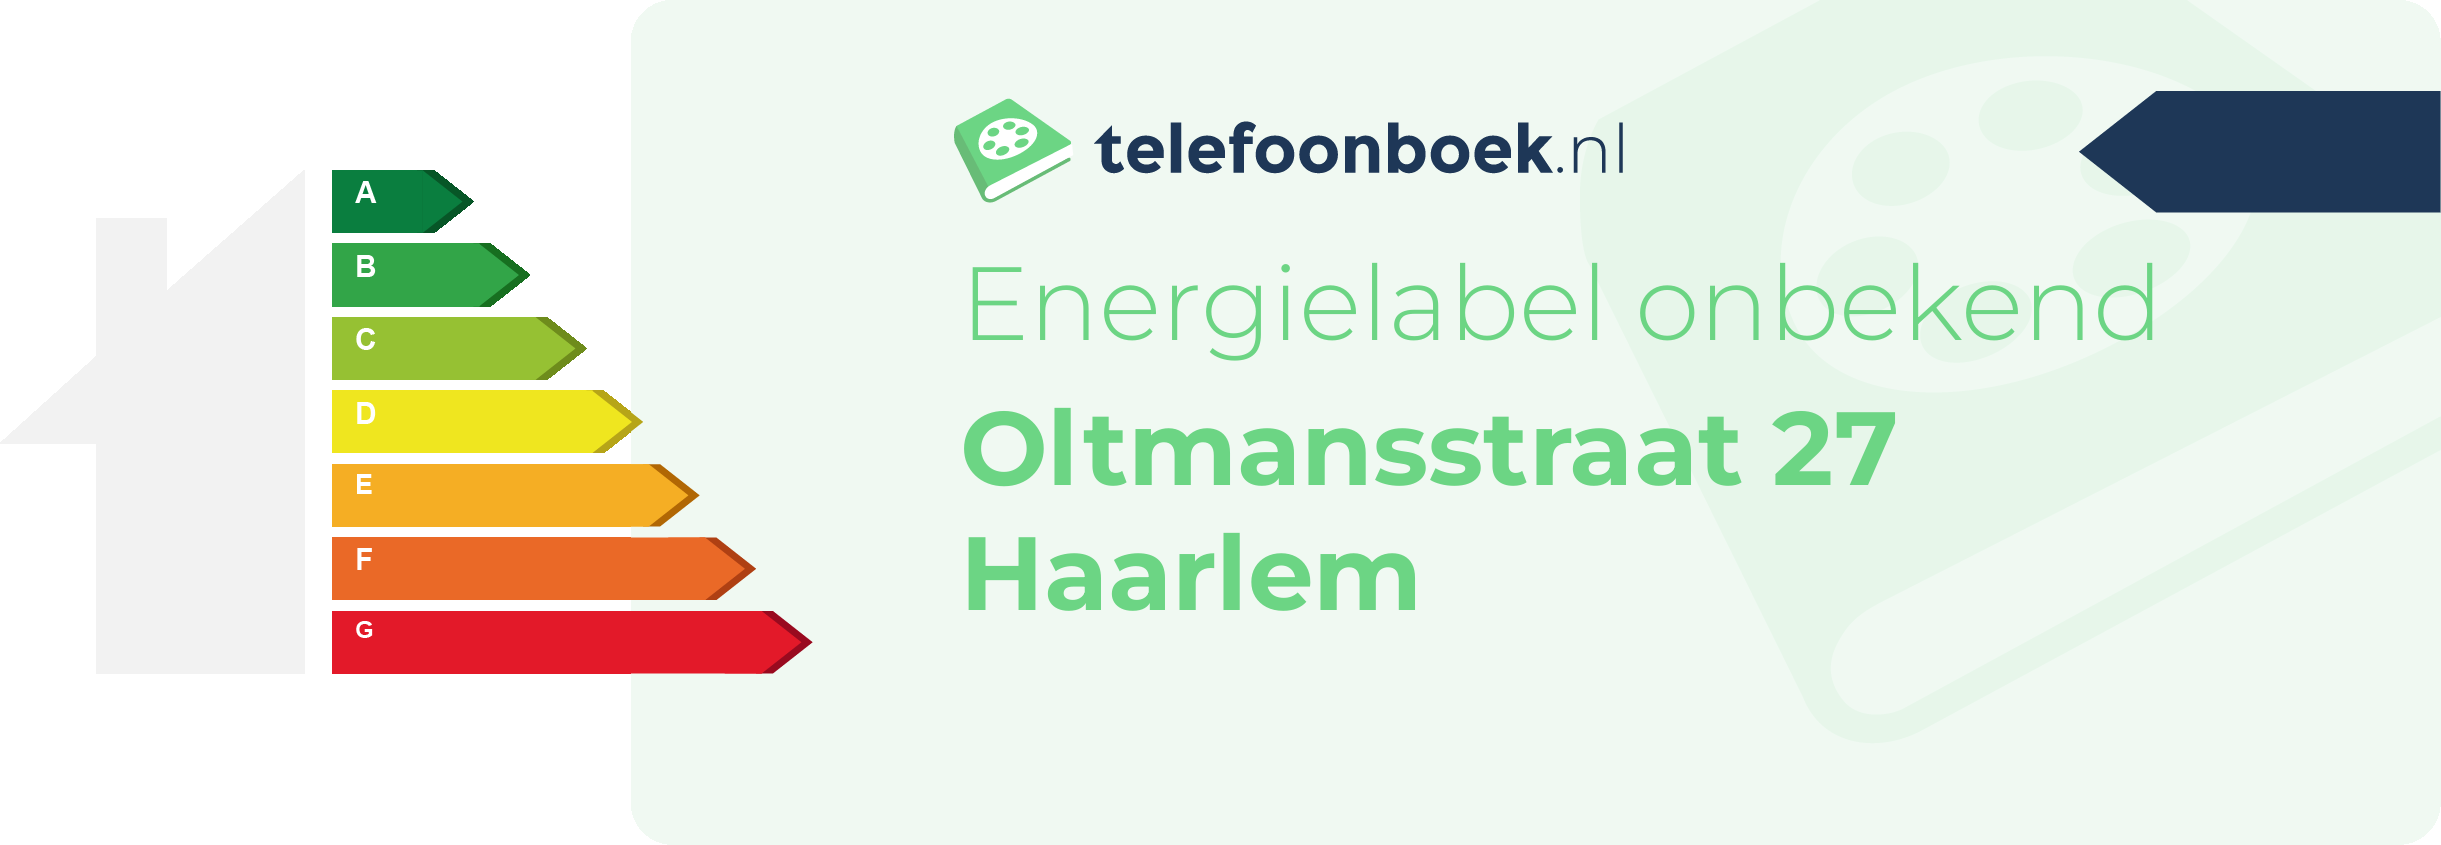 Energielabel Oltmansstraat 27 Haarlem